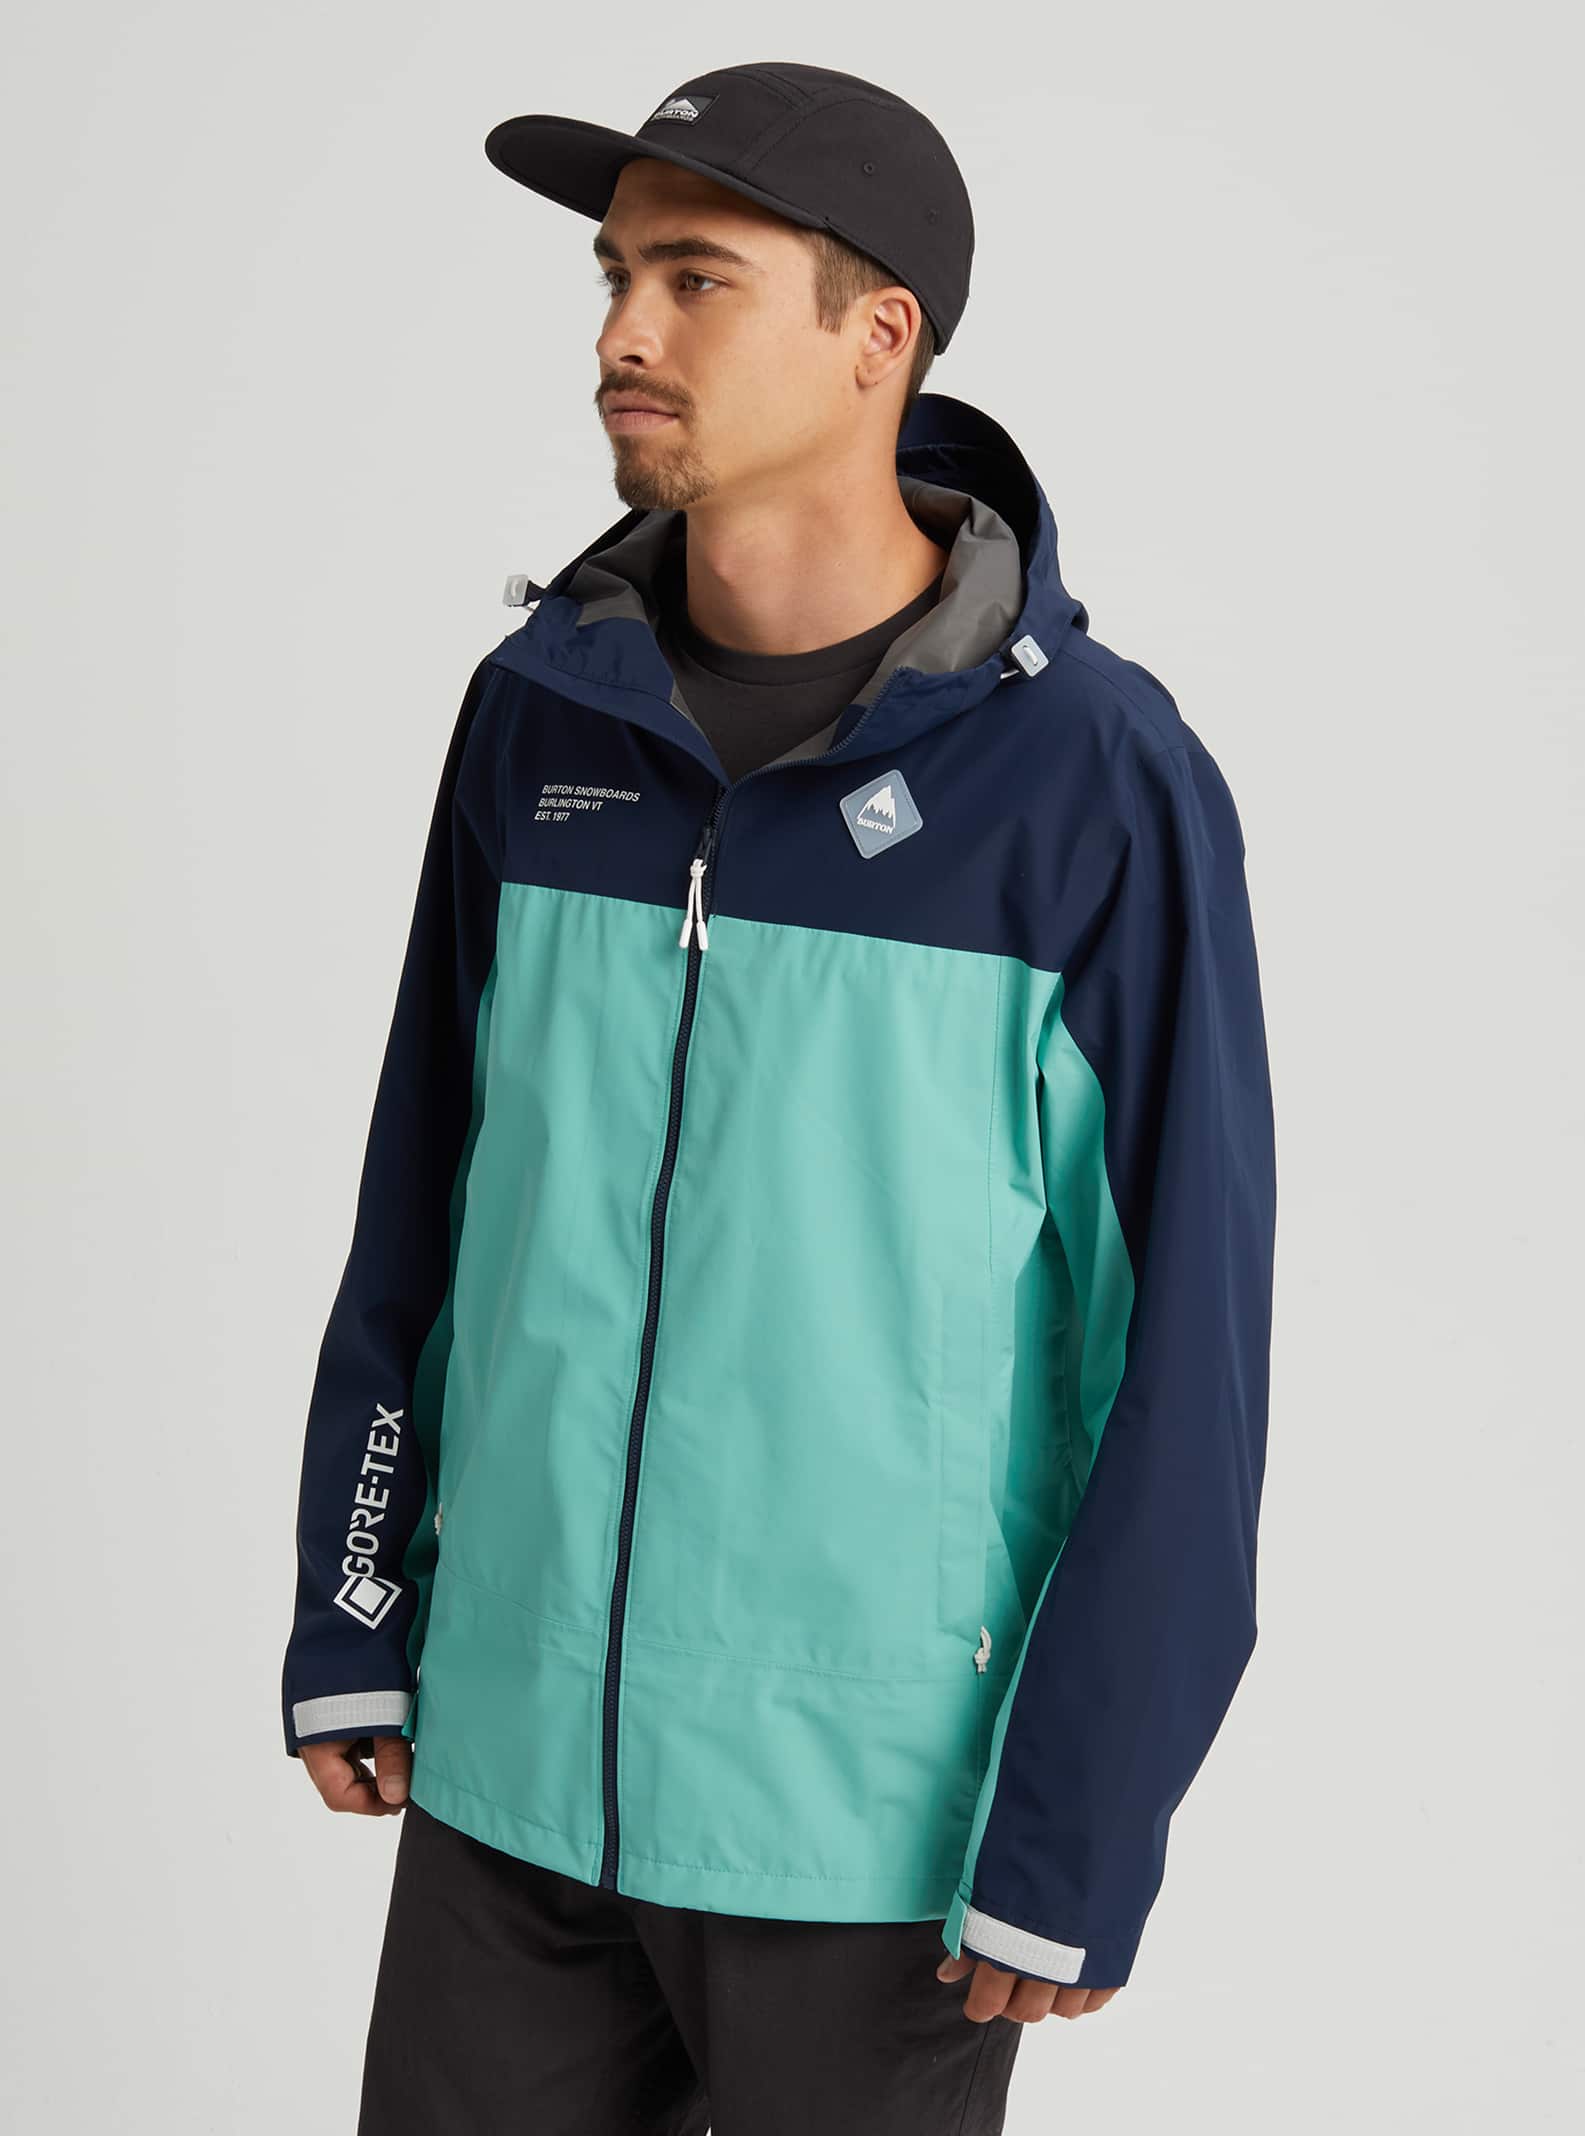 Men's Burton GORE-TEX Packrite Rain Jacket | Burton.com Spring 2020 US